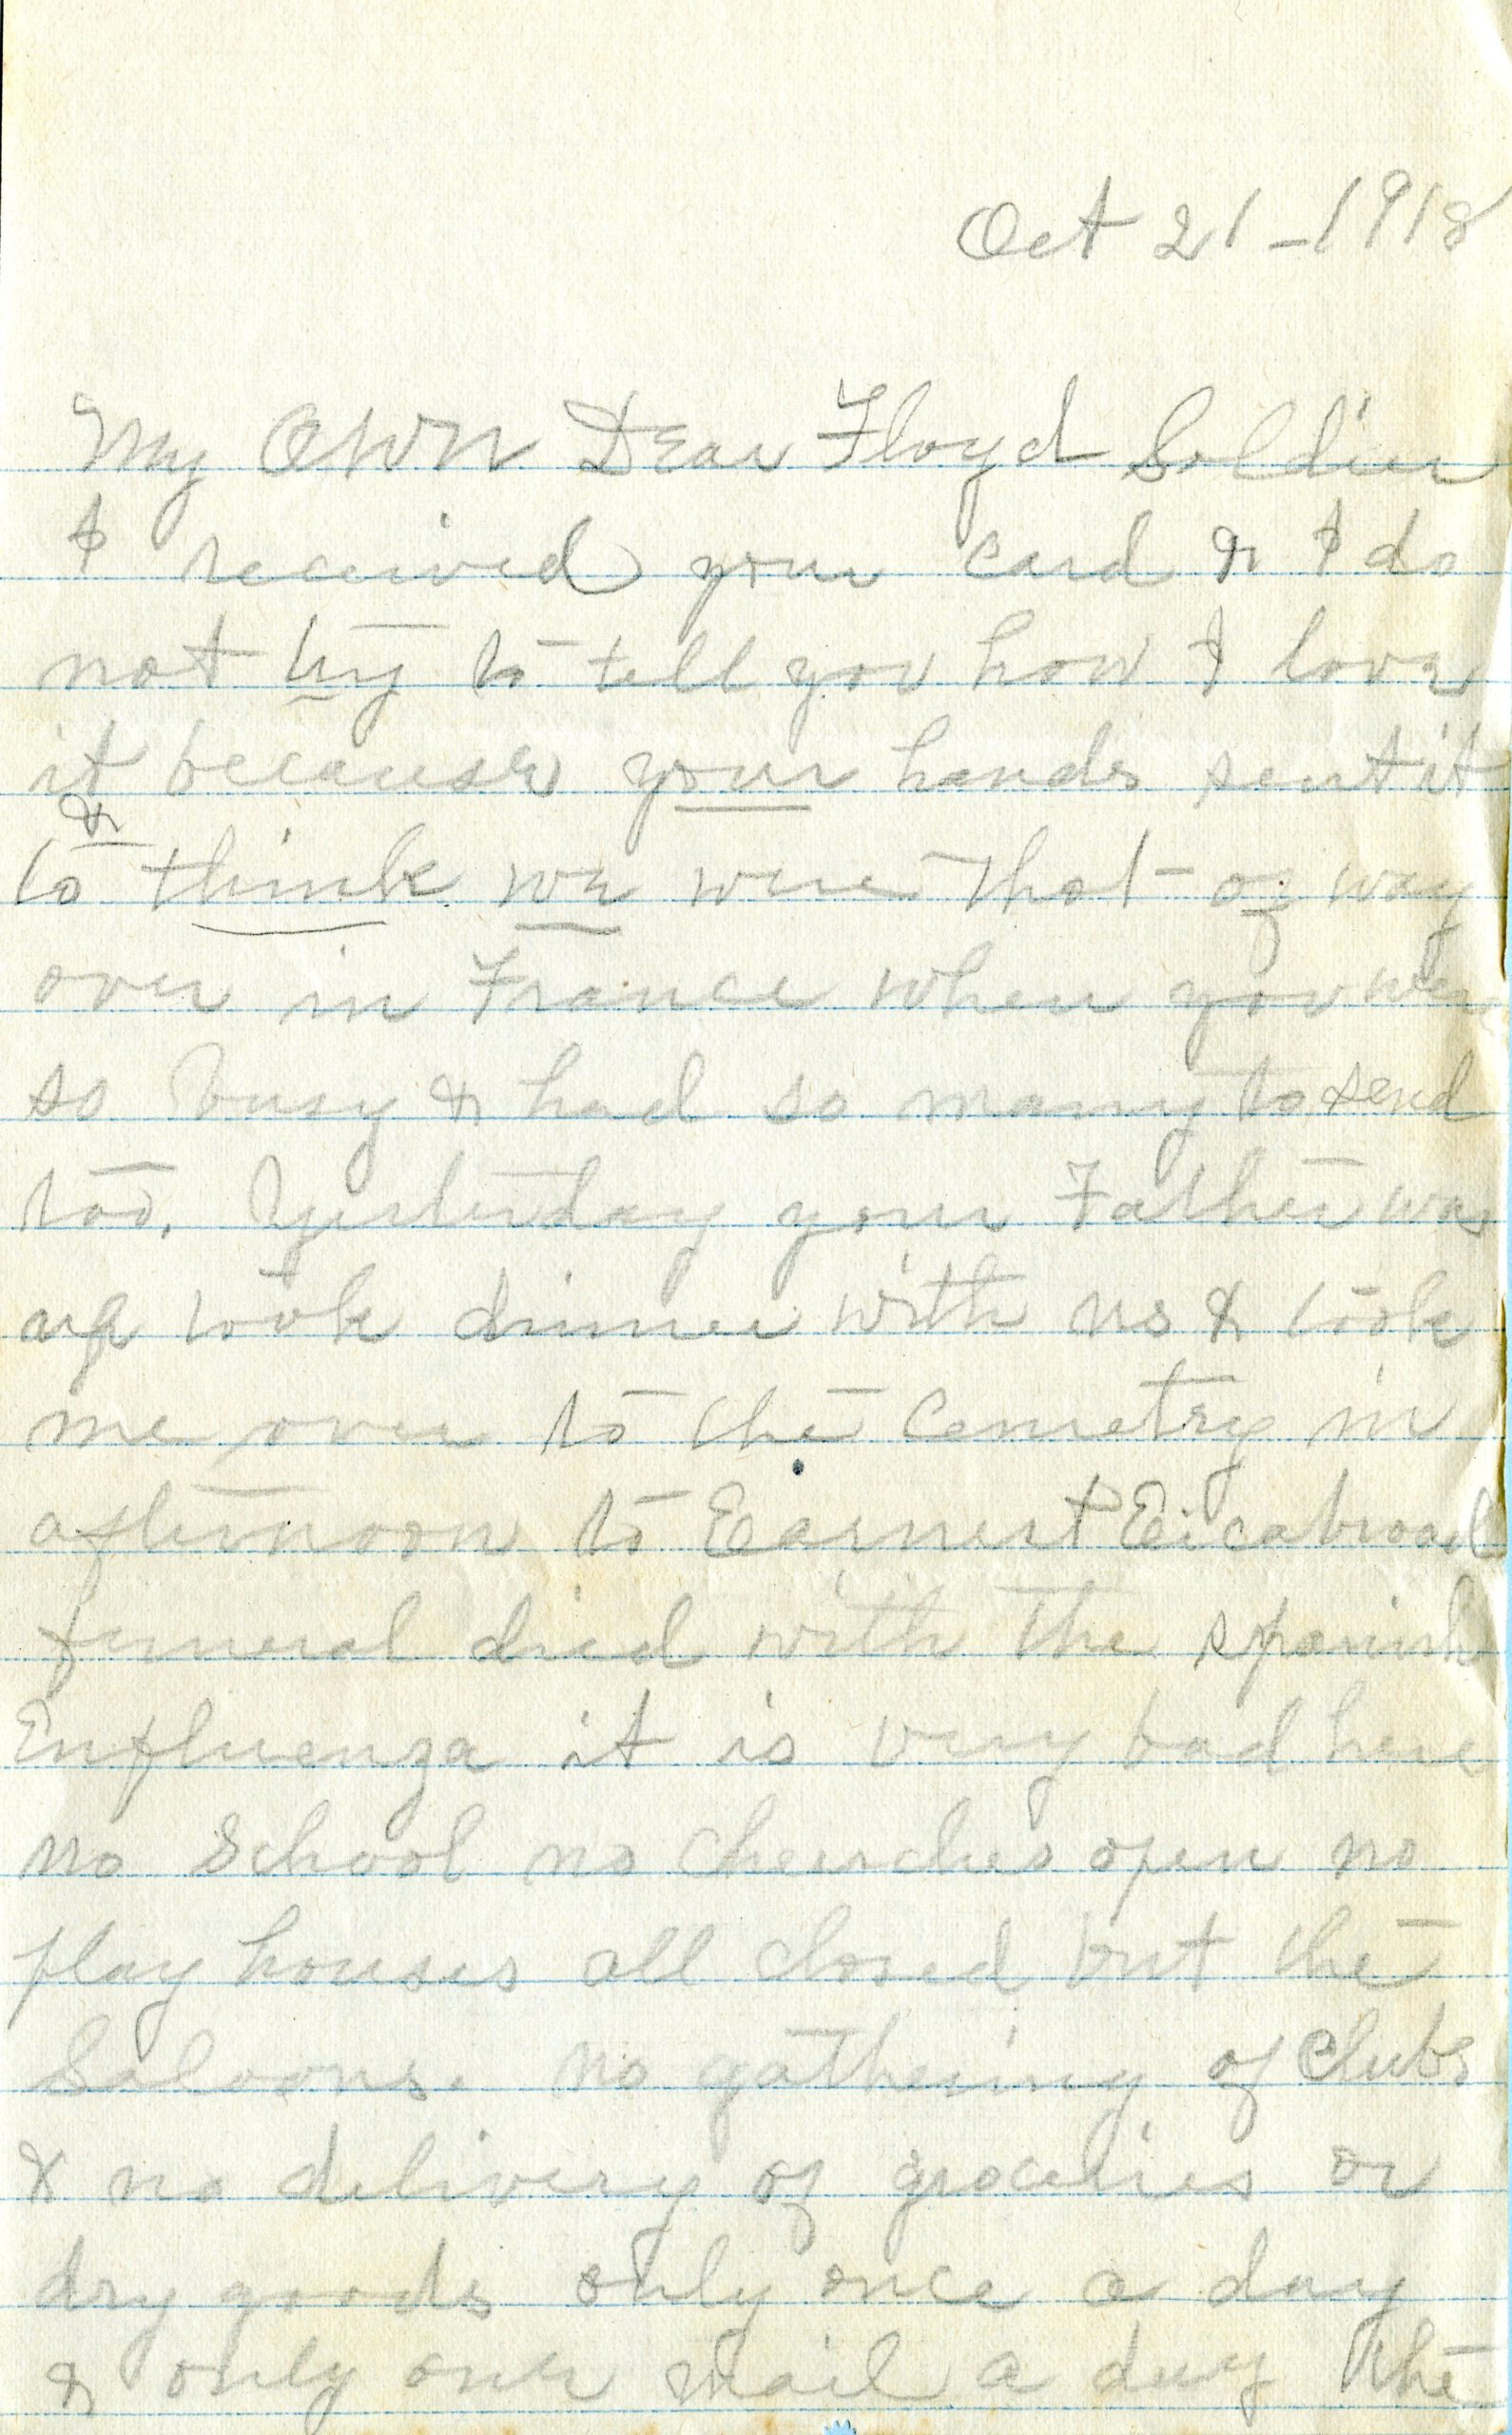 21 October 1918 Letter from Grandma Phillips